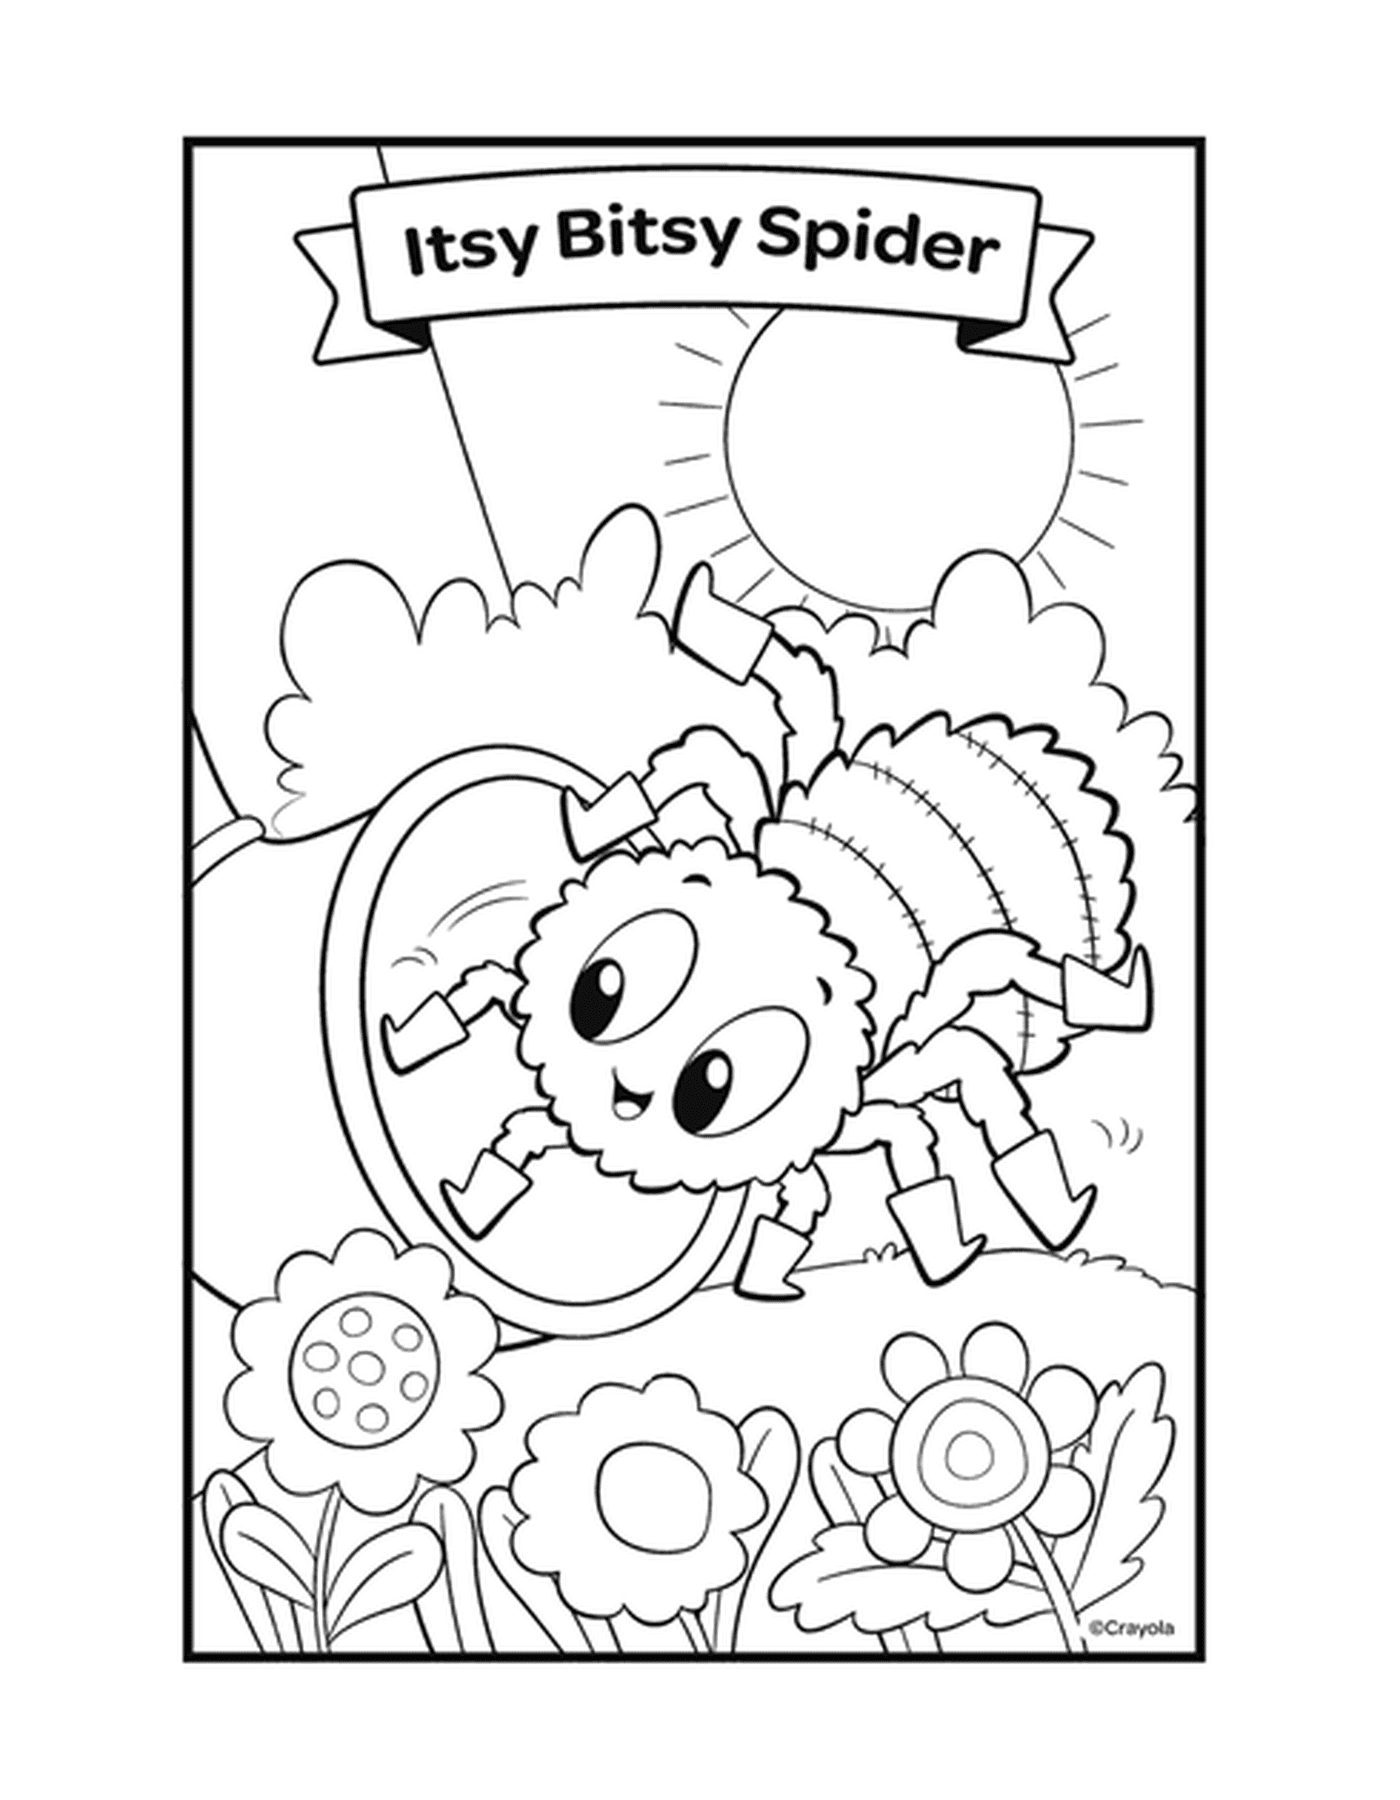  与蜘蛛在网上的伊西·比西·比西·蜘蛛押韵 